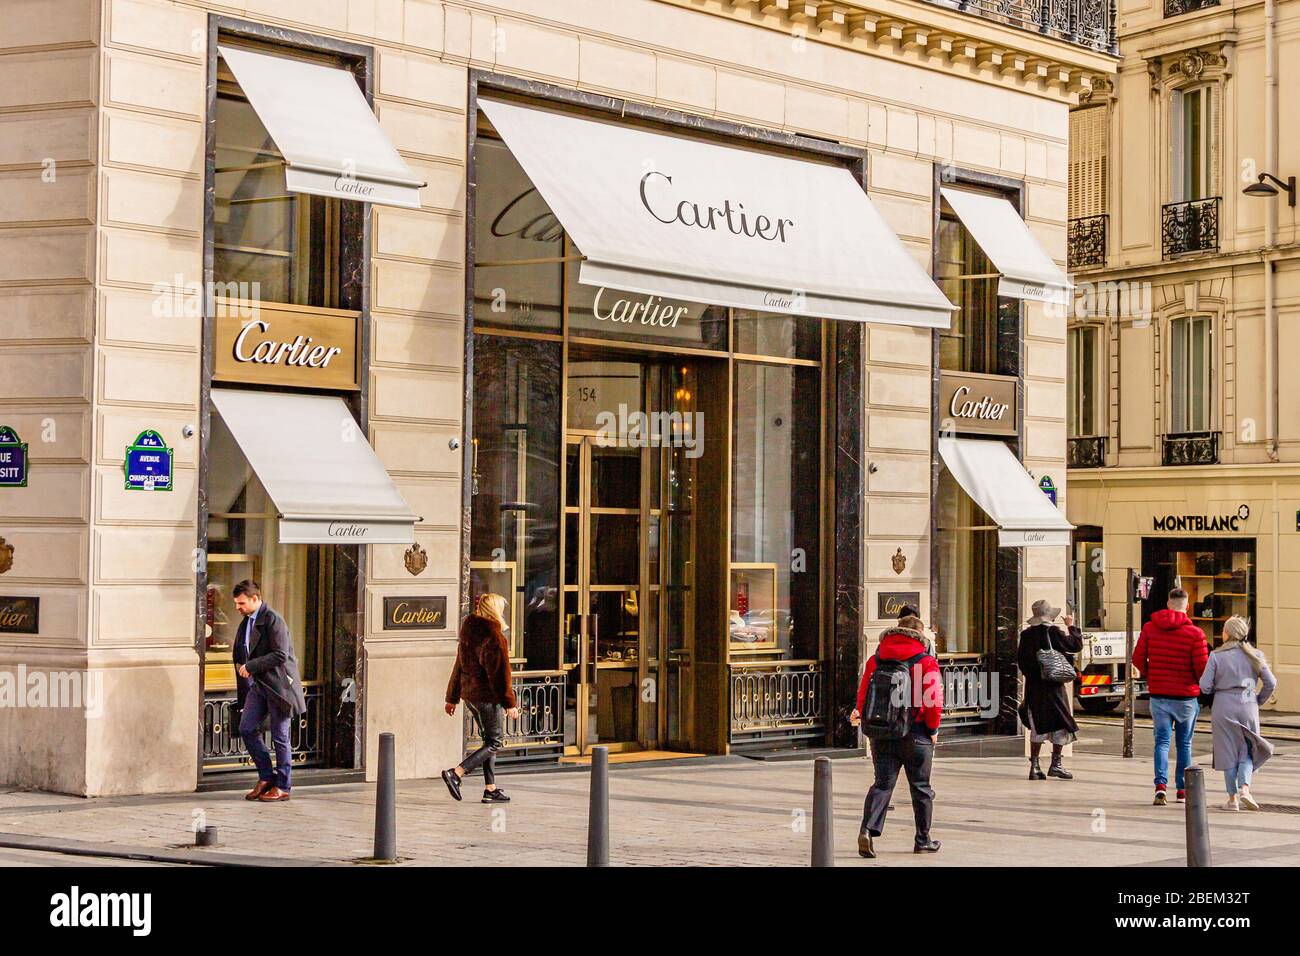 Negozio di articoli di lusso Cartier sugli Champs Elysees, Parigi, Francia. Febbraio 2020. Foto Stock